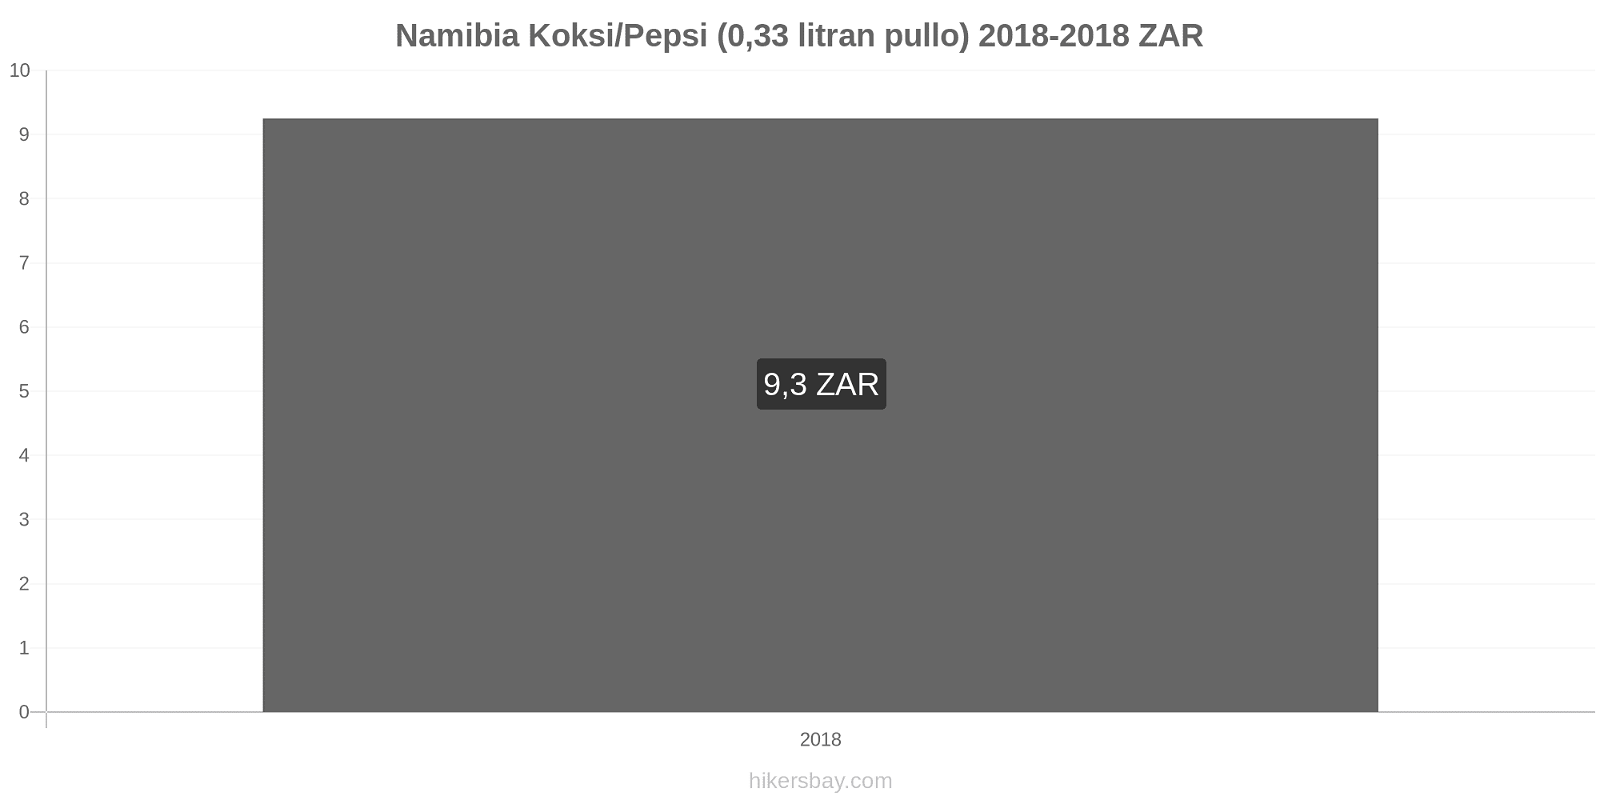 Namibia hintojen muutokset Koksi/Pepsi (0,33 litran pullo) hikersbay.com